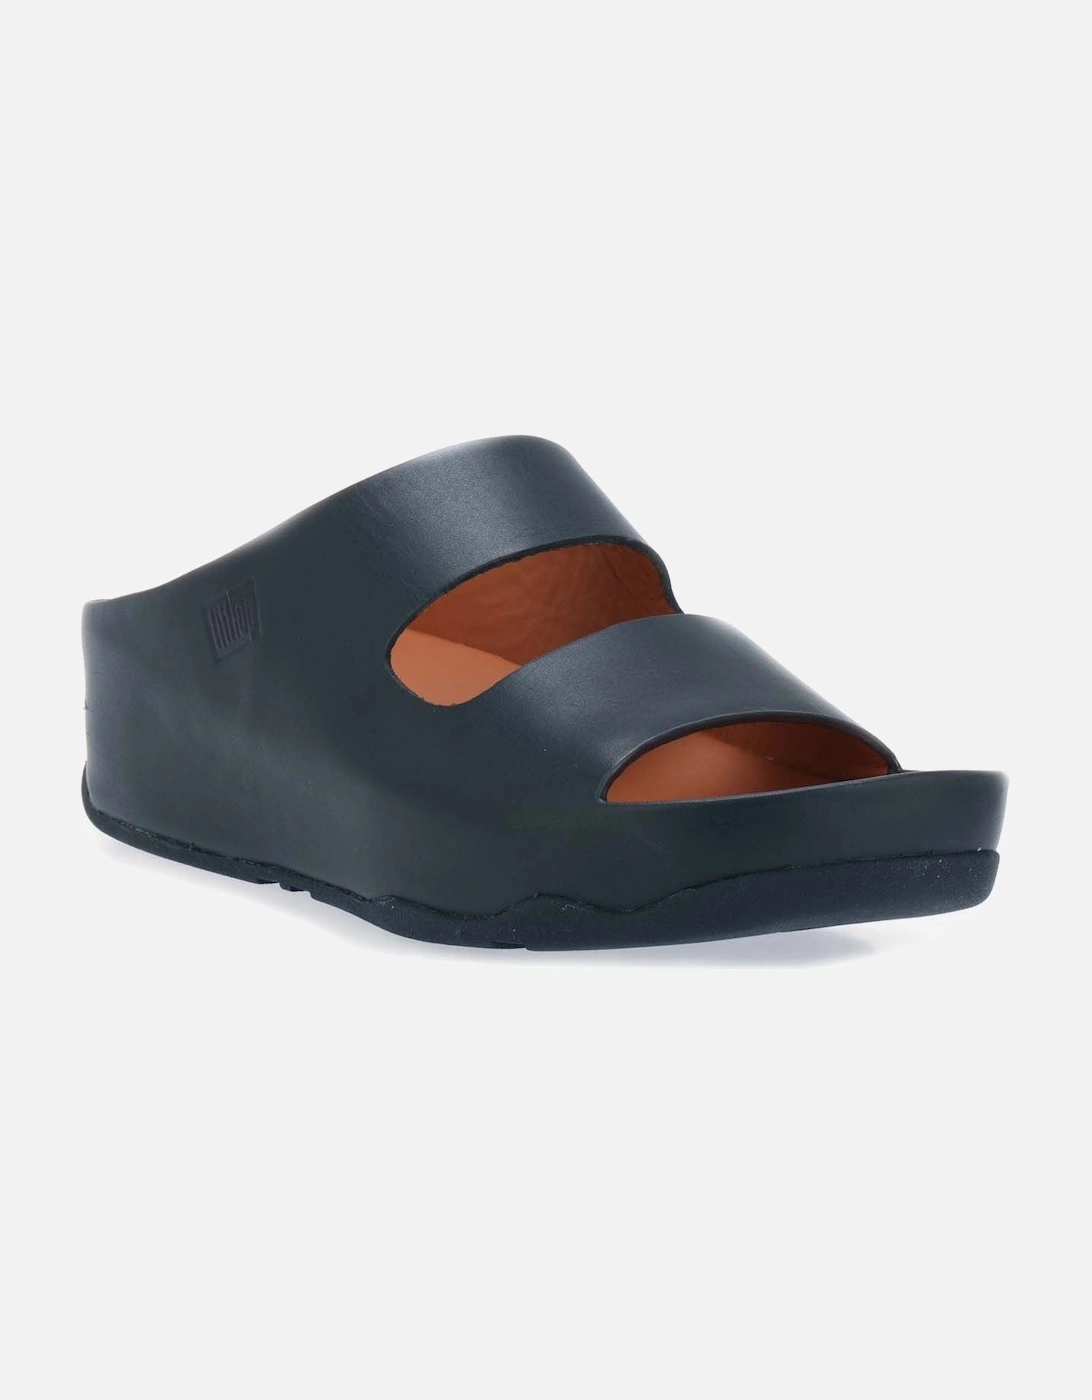 Womens Shuv Two Bar Leather Slide Sandals